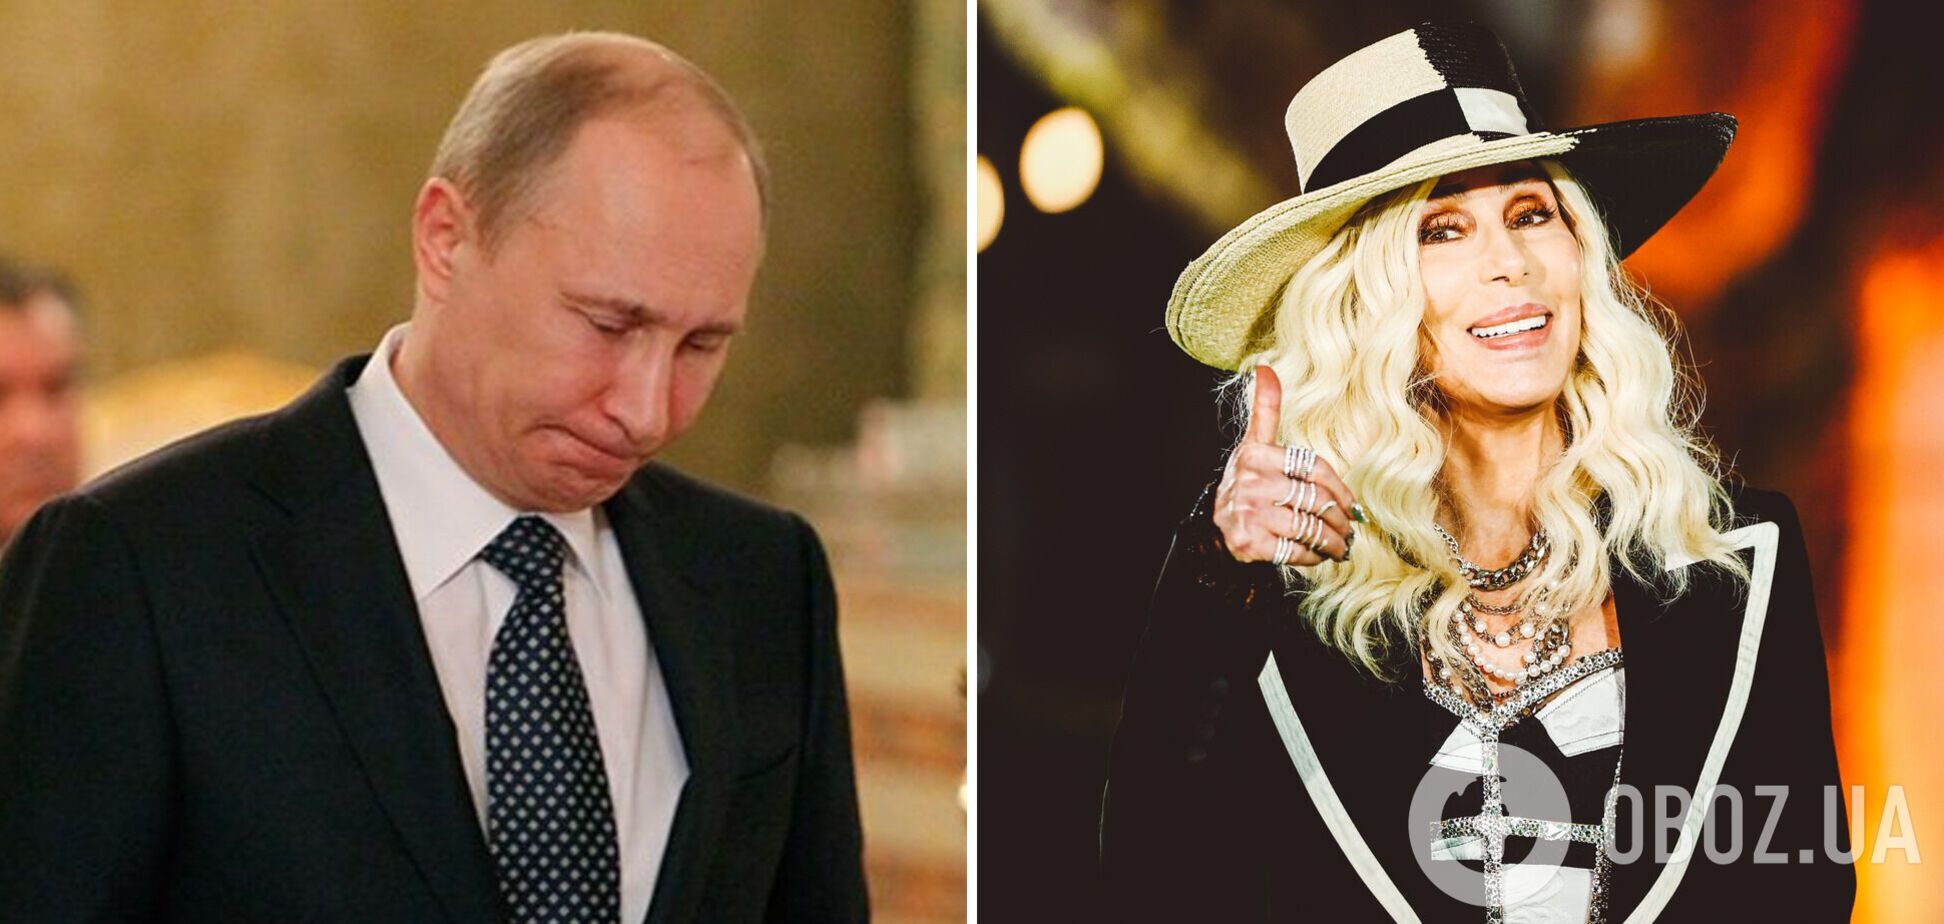 Співачка Шер висміяла Путіна вірусним фото з ялинковою іграшкою і заявила, що не бажає йому щастя